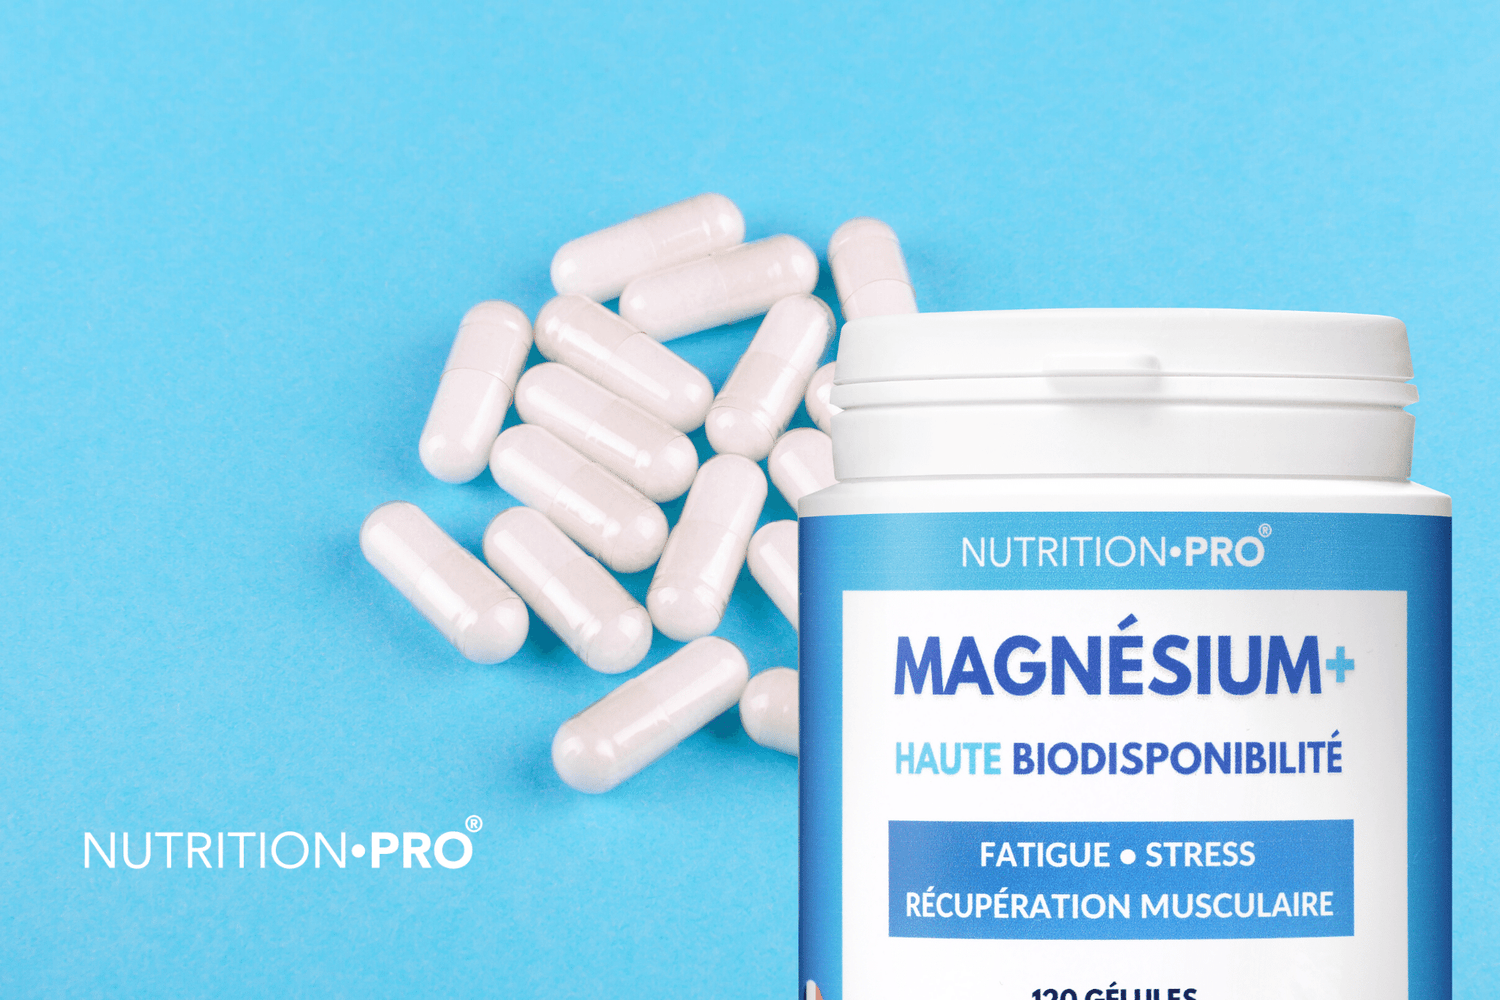 Les bienfaits du magnésium : 10 avantages pour la santé fondés sur des preuves